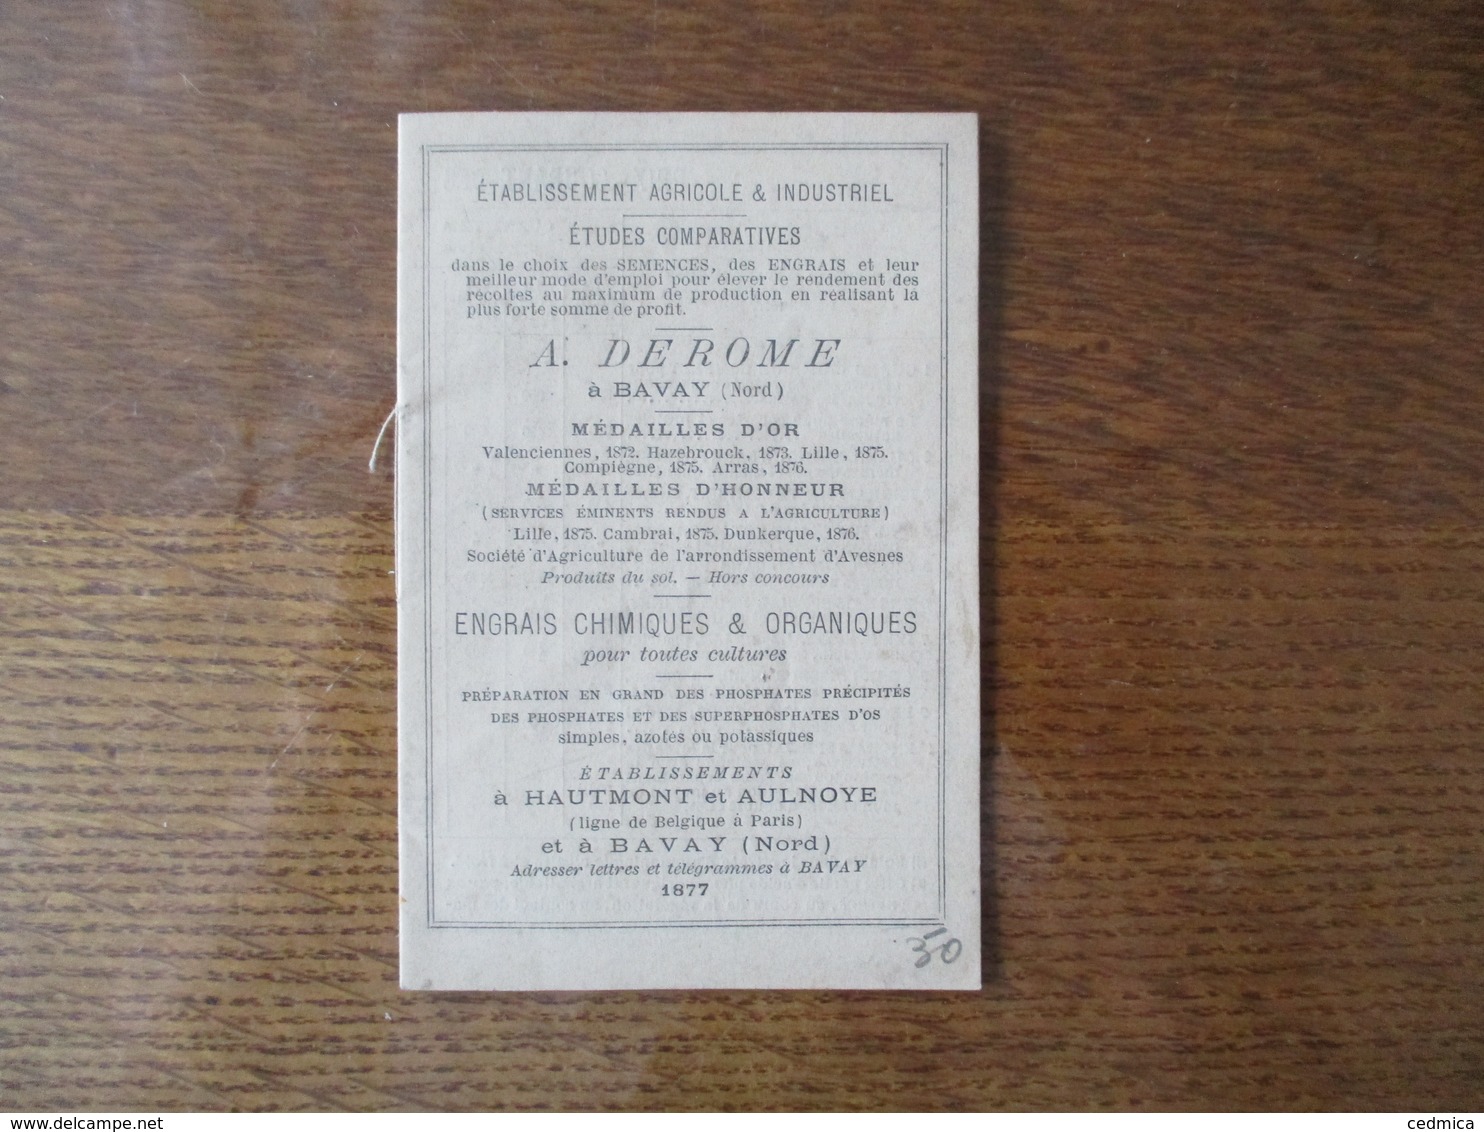 1877 A. DEROME A BAVAY ETABLISSEMENTS A HAUTMONT ET AULNOYE ENGRAIS CHIMIQUES ET ORGANIQUES 12 PAGES - Publicités